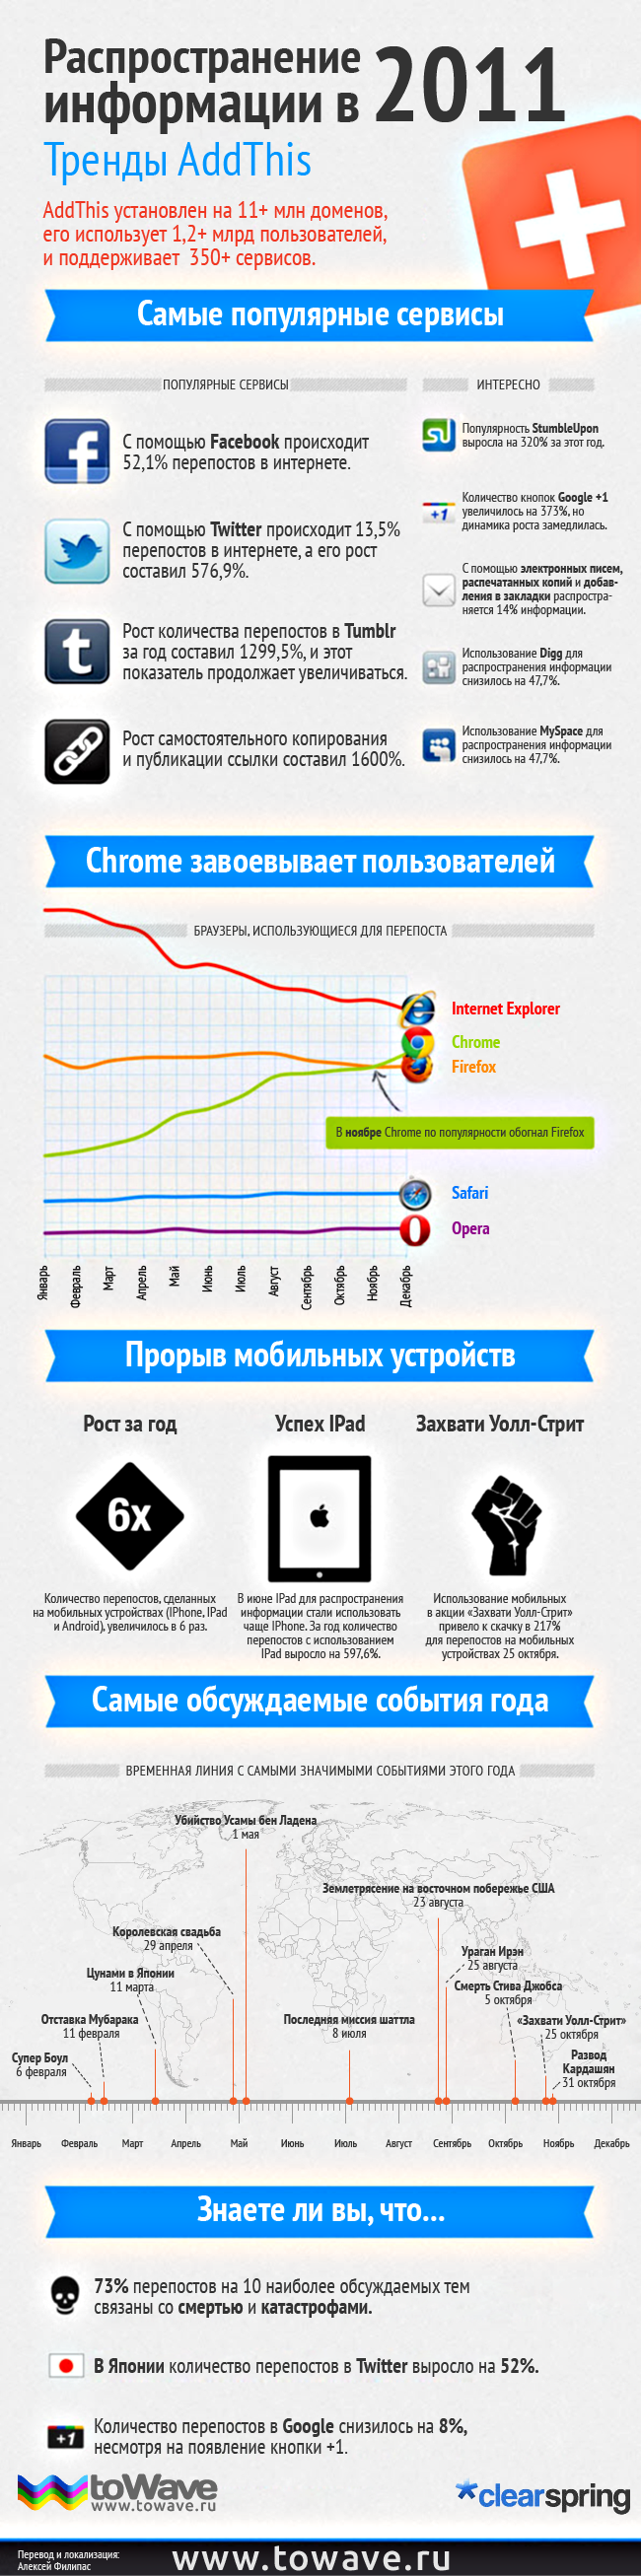 Инфографика: Распространение информации в 2011 году